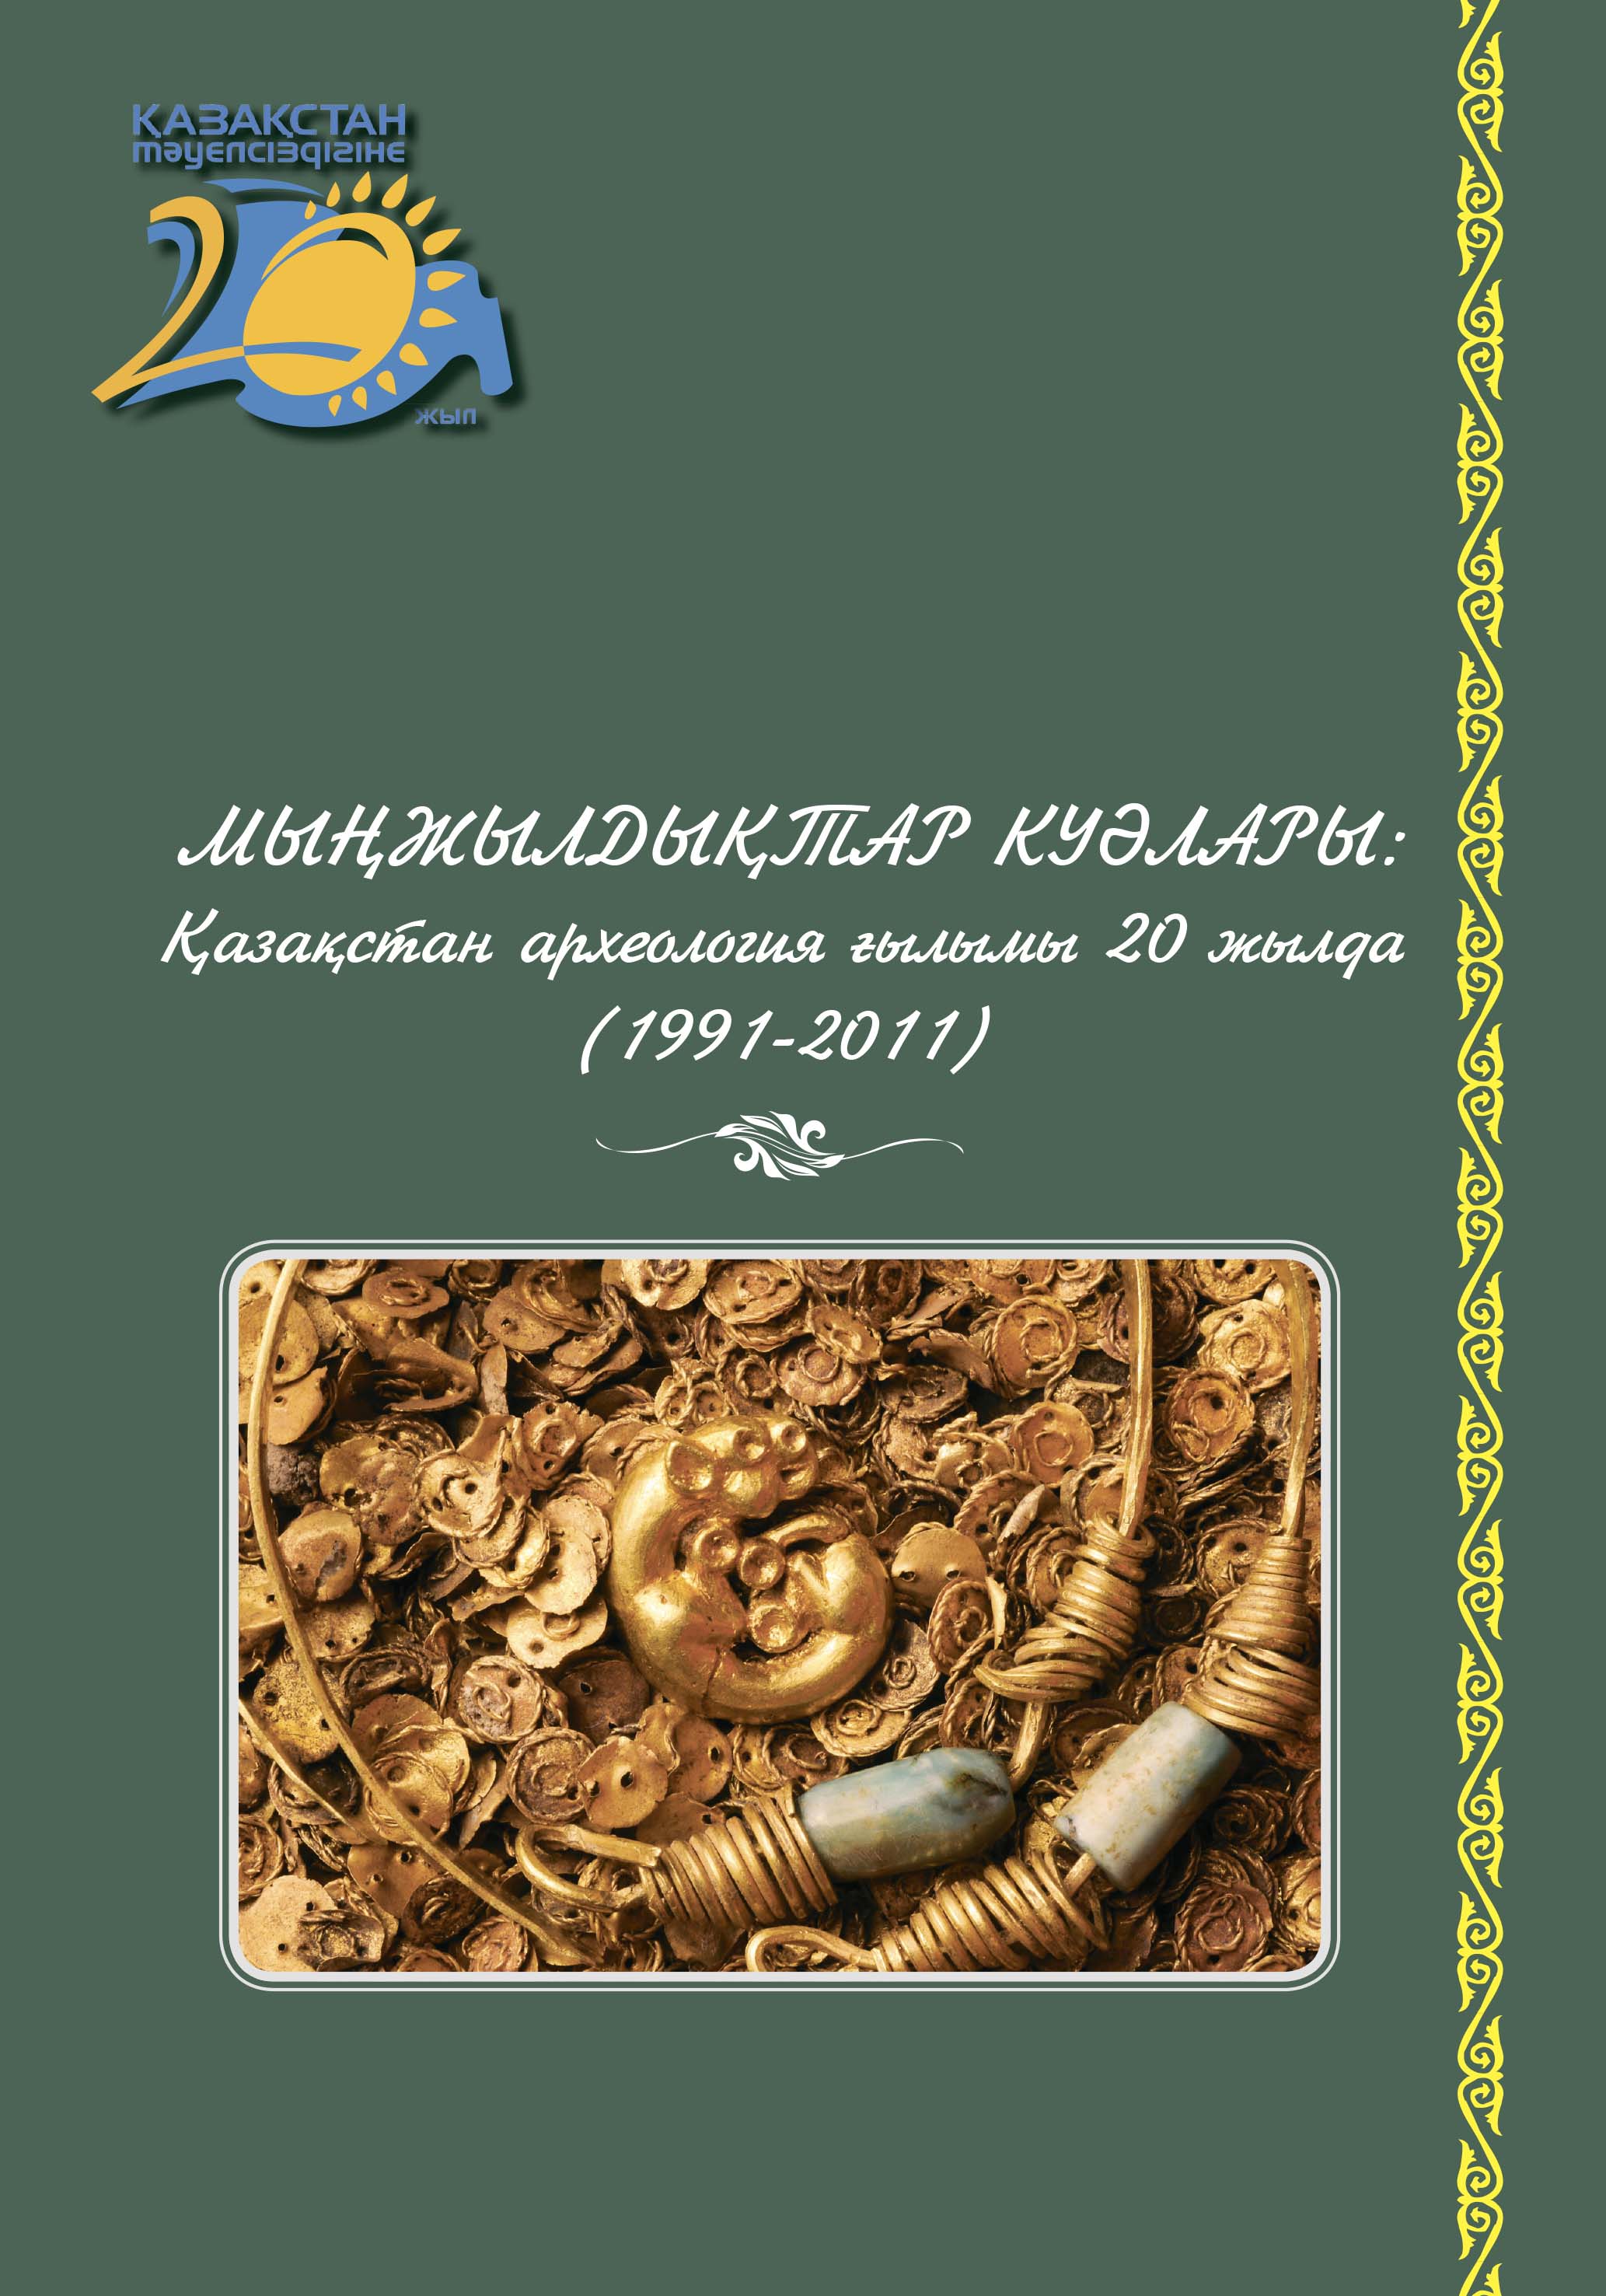 Обложка Свидетели тысячелетий: aрхеологическая наука Казахстана за 20 лет